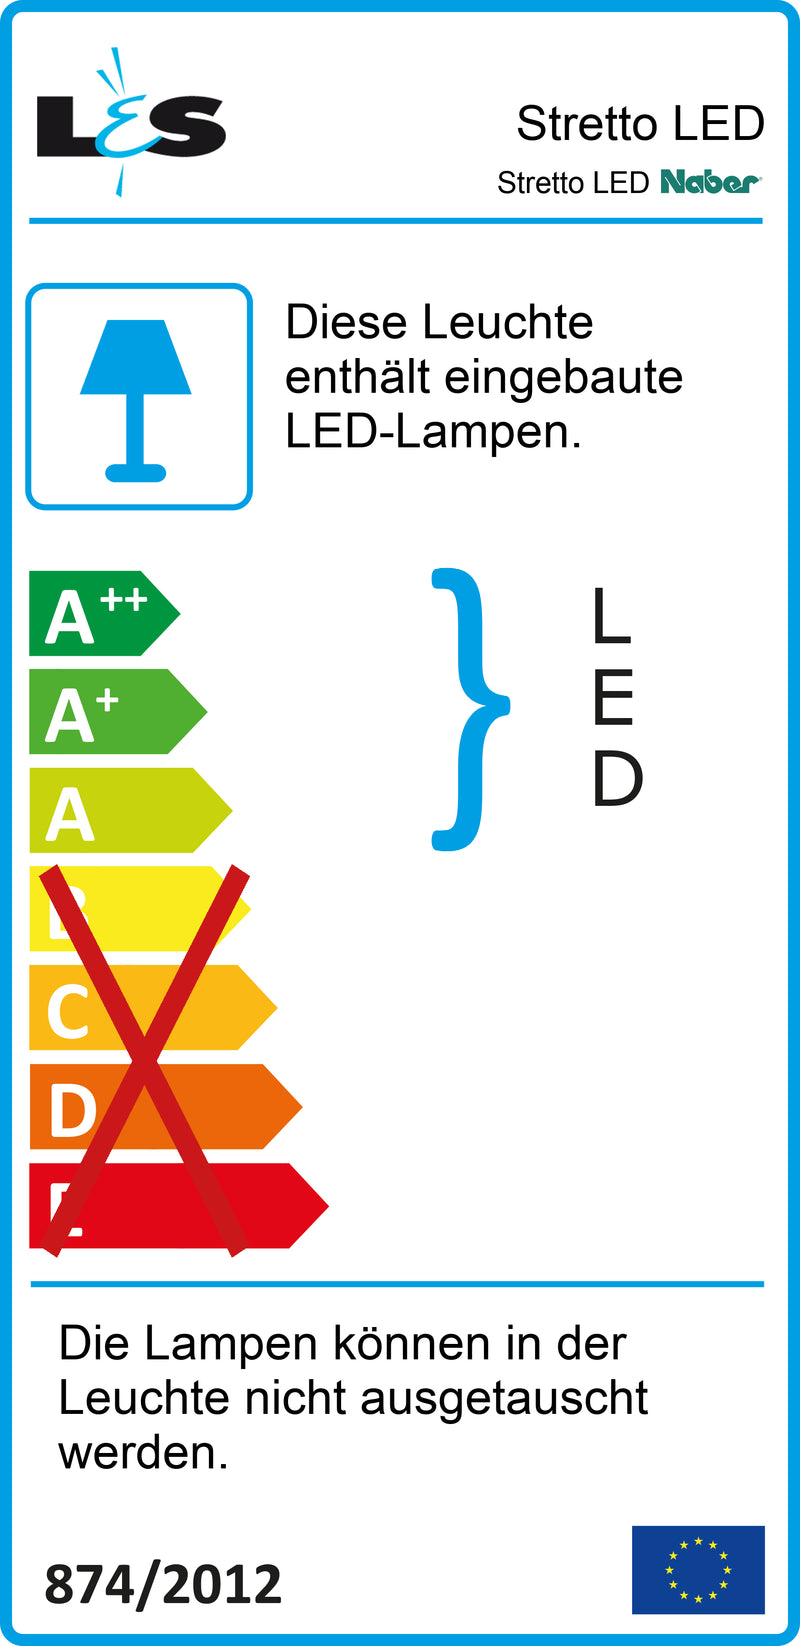 E-Label zu Zeichnung zu Stretto LED als Variante Einzelleuchte mit Schalter von Naber GmbH in der Kategorie Lichttechnik in Österreich auf conceptshop.at